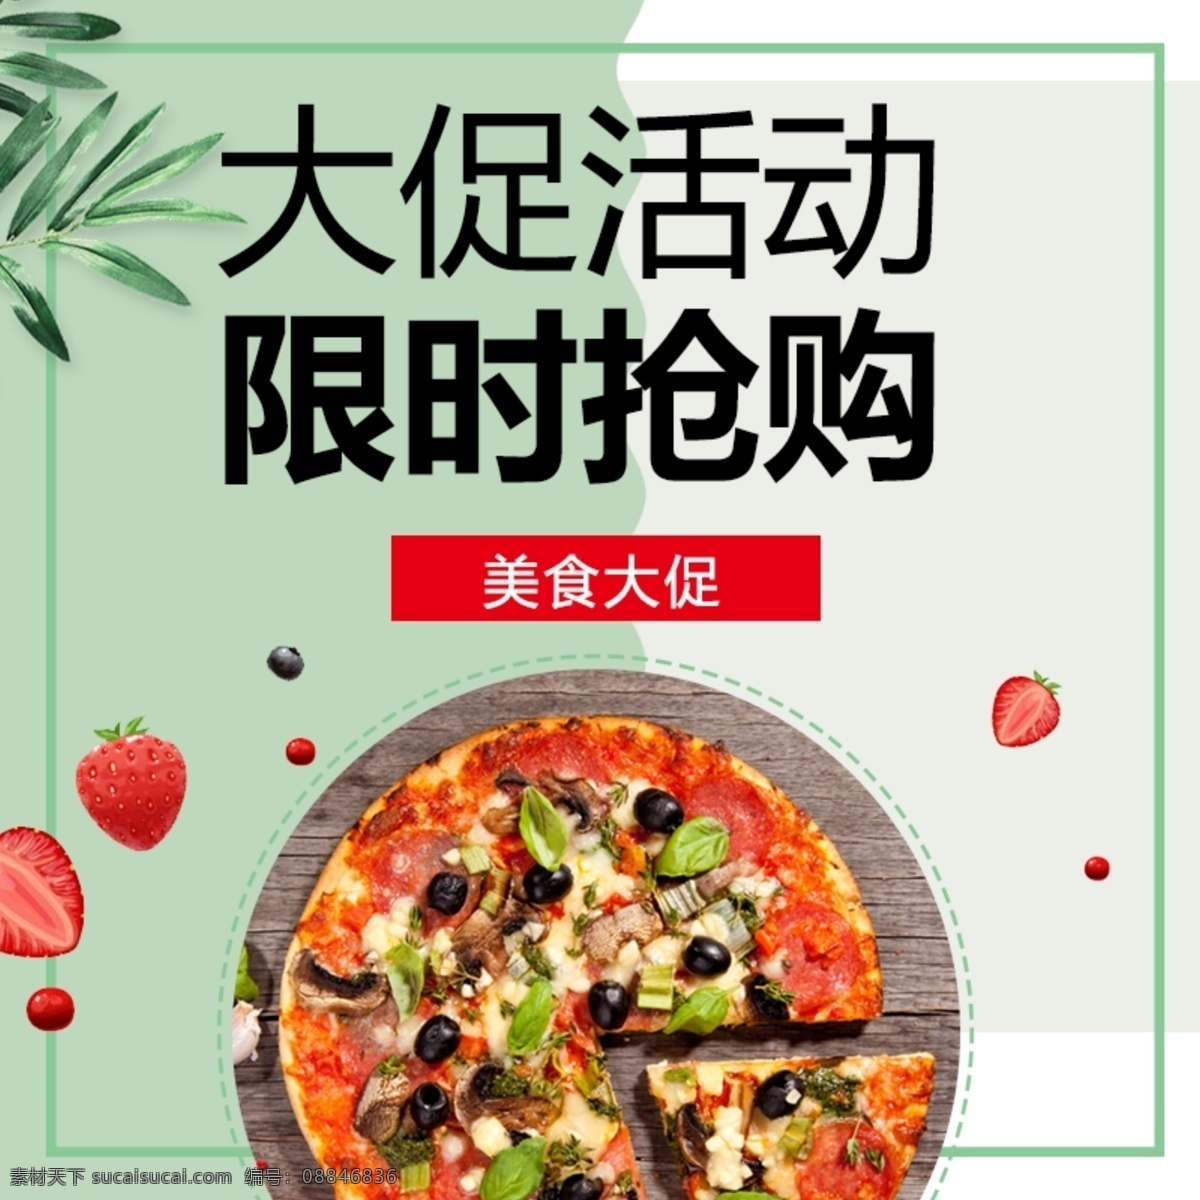 绿色 小 清新 可爱 简约 大气 食品 披萨 主 图 促销 大促活动 小清新 主图 促销图 限时抢购